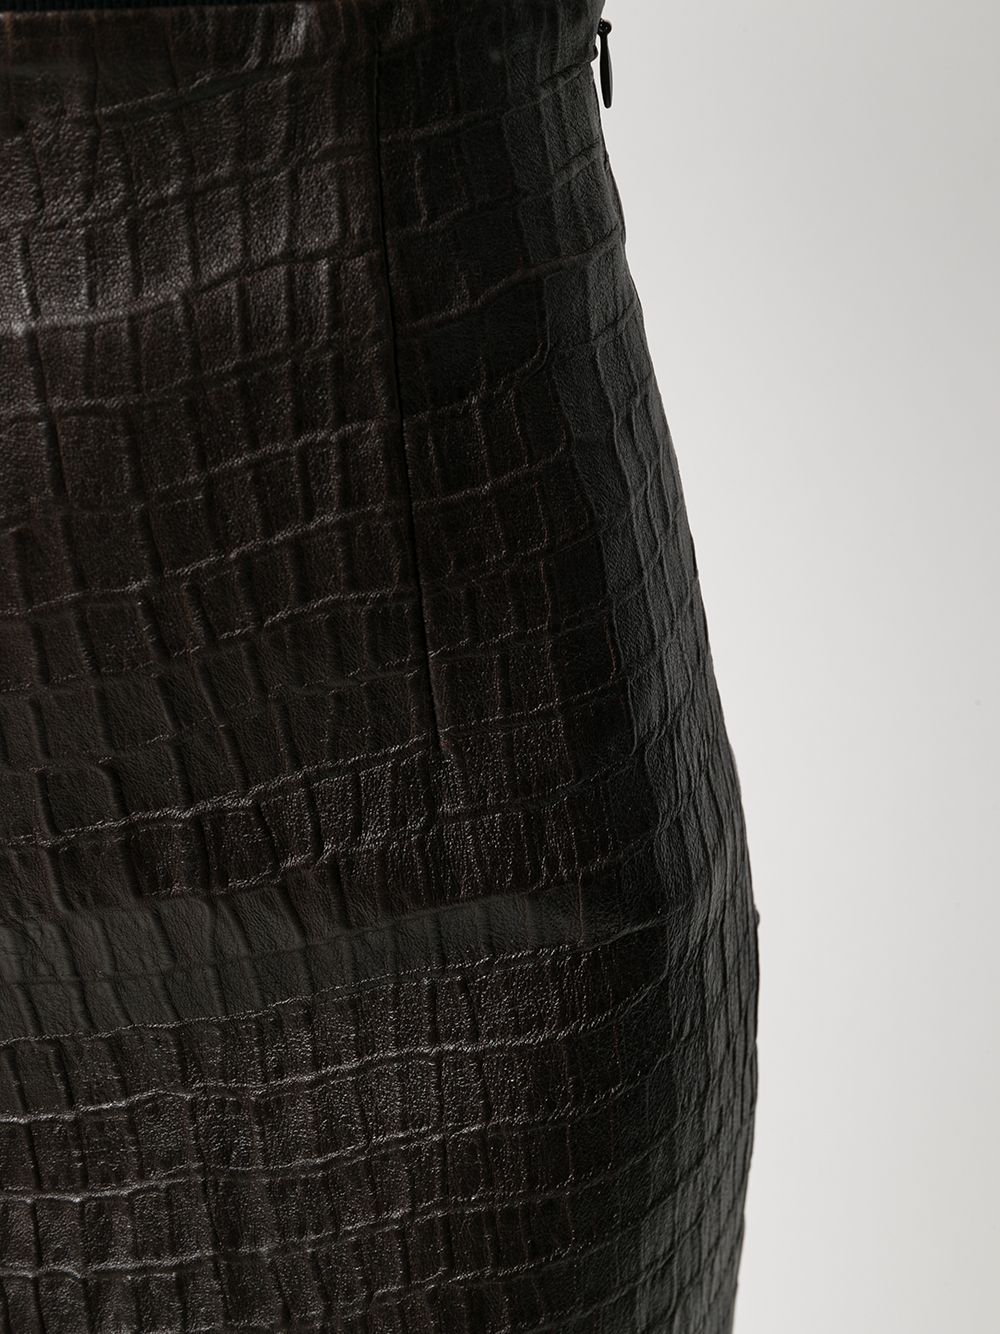 фото Brunello cucinelli юбка-карандаш с тиснением под крокодила